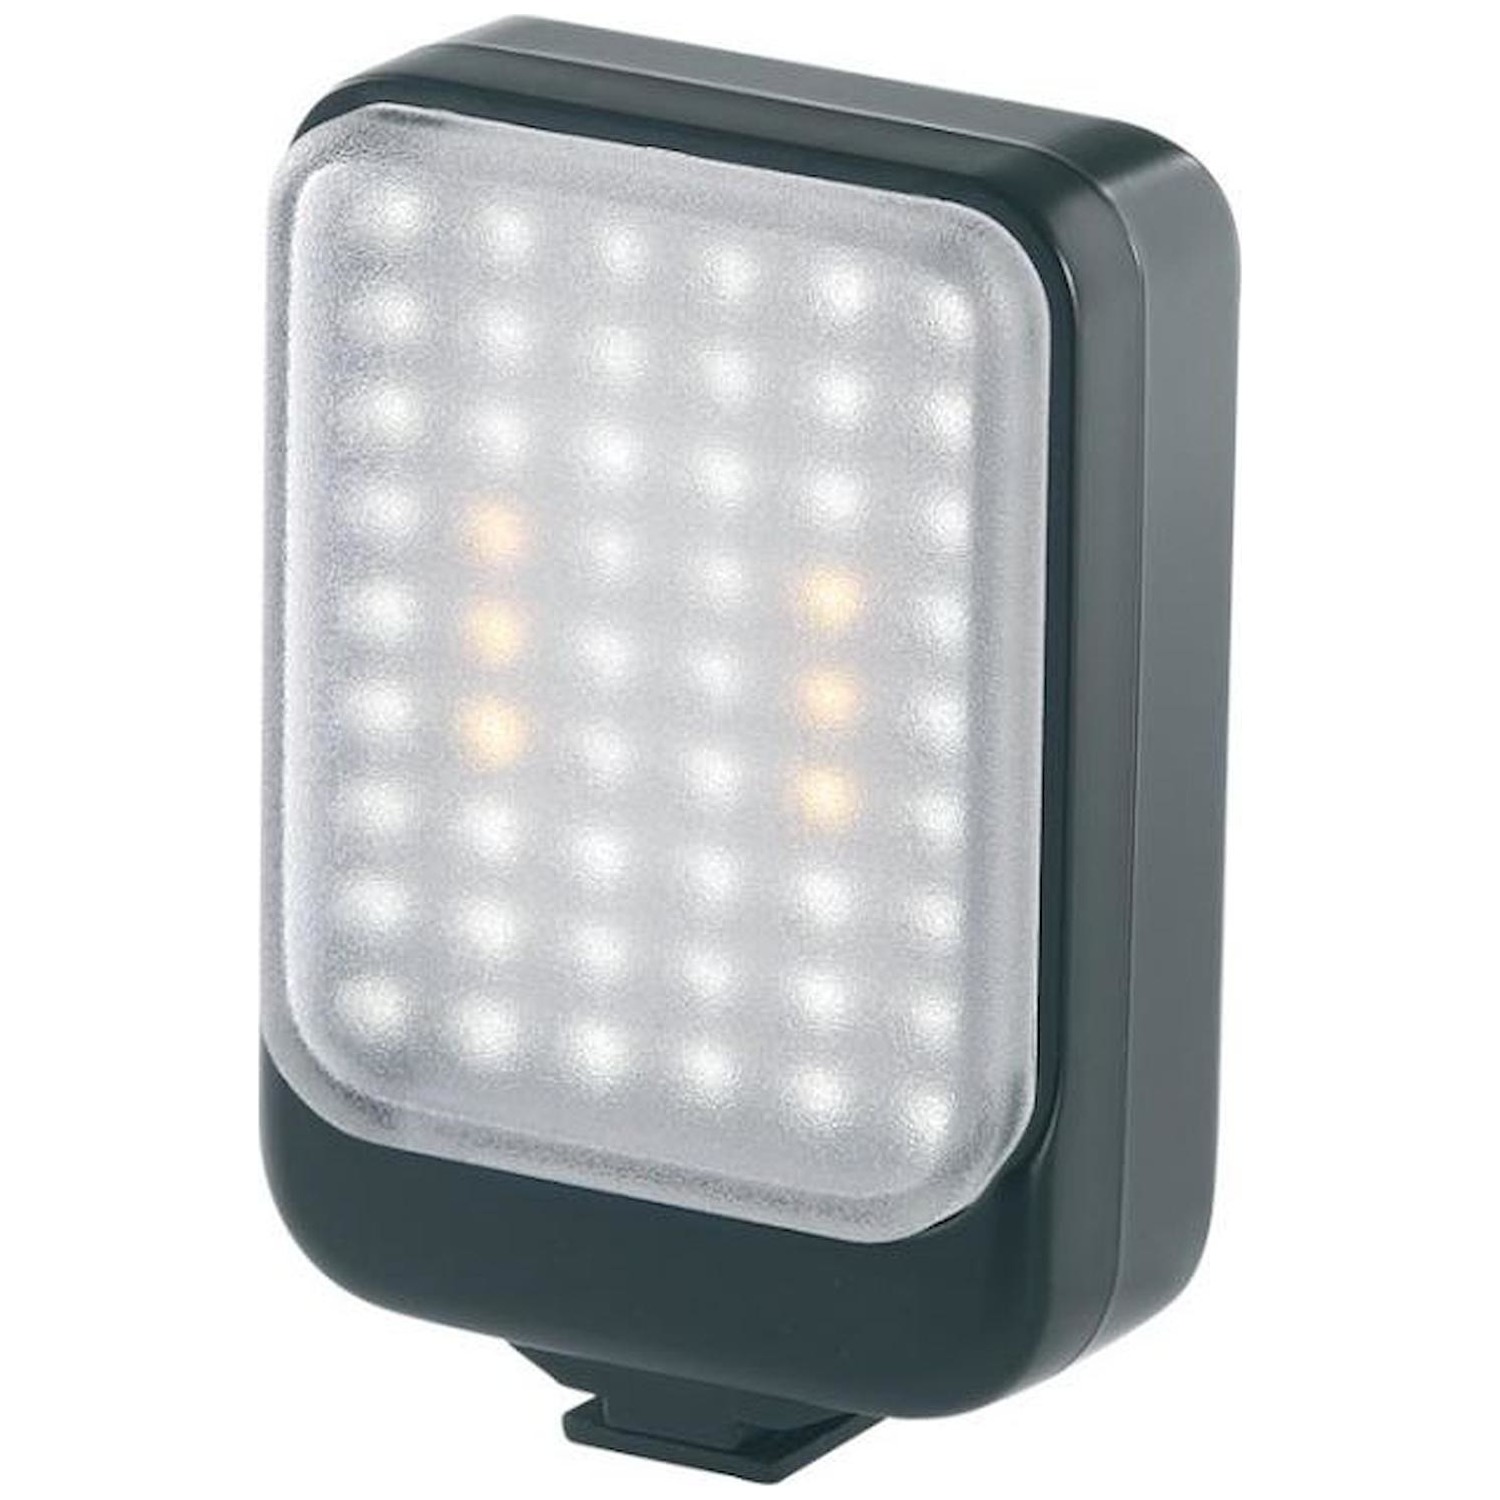 Immagine per Illuminatore Repsol 54 LED Flash da DIMOStore